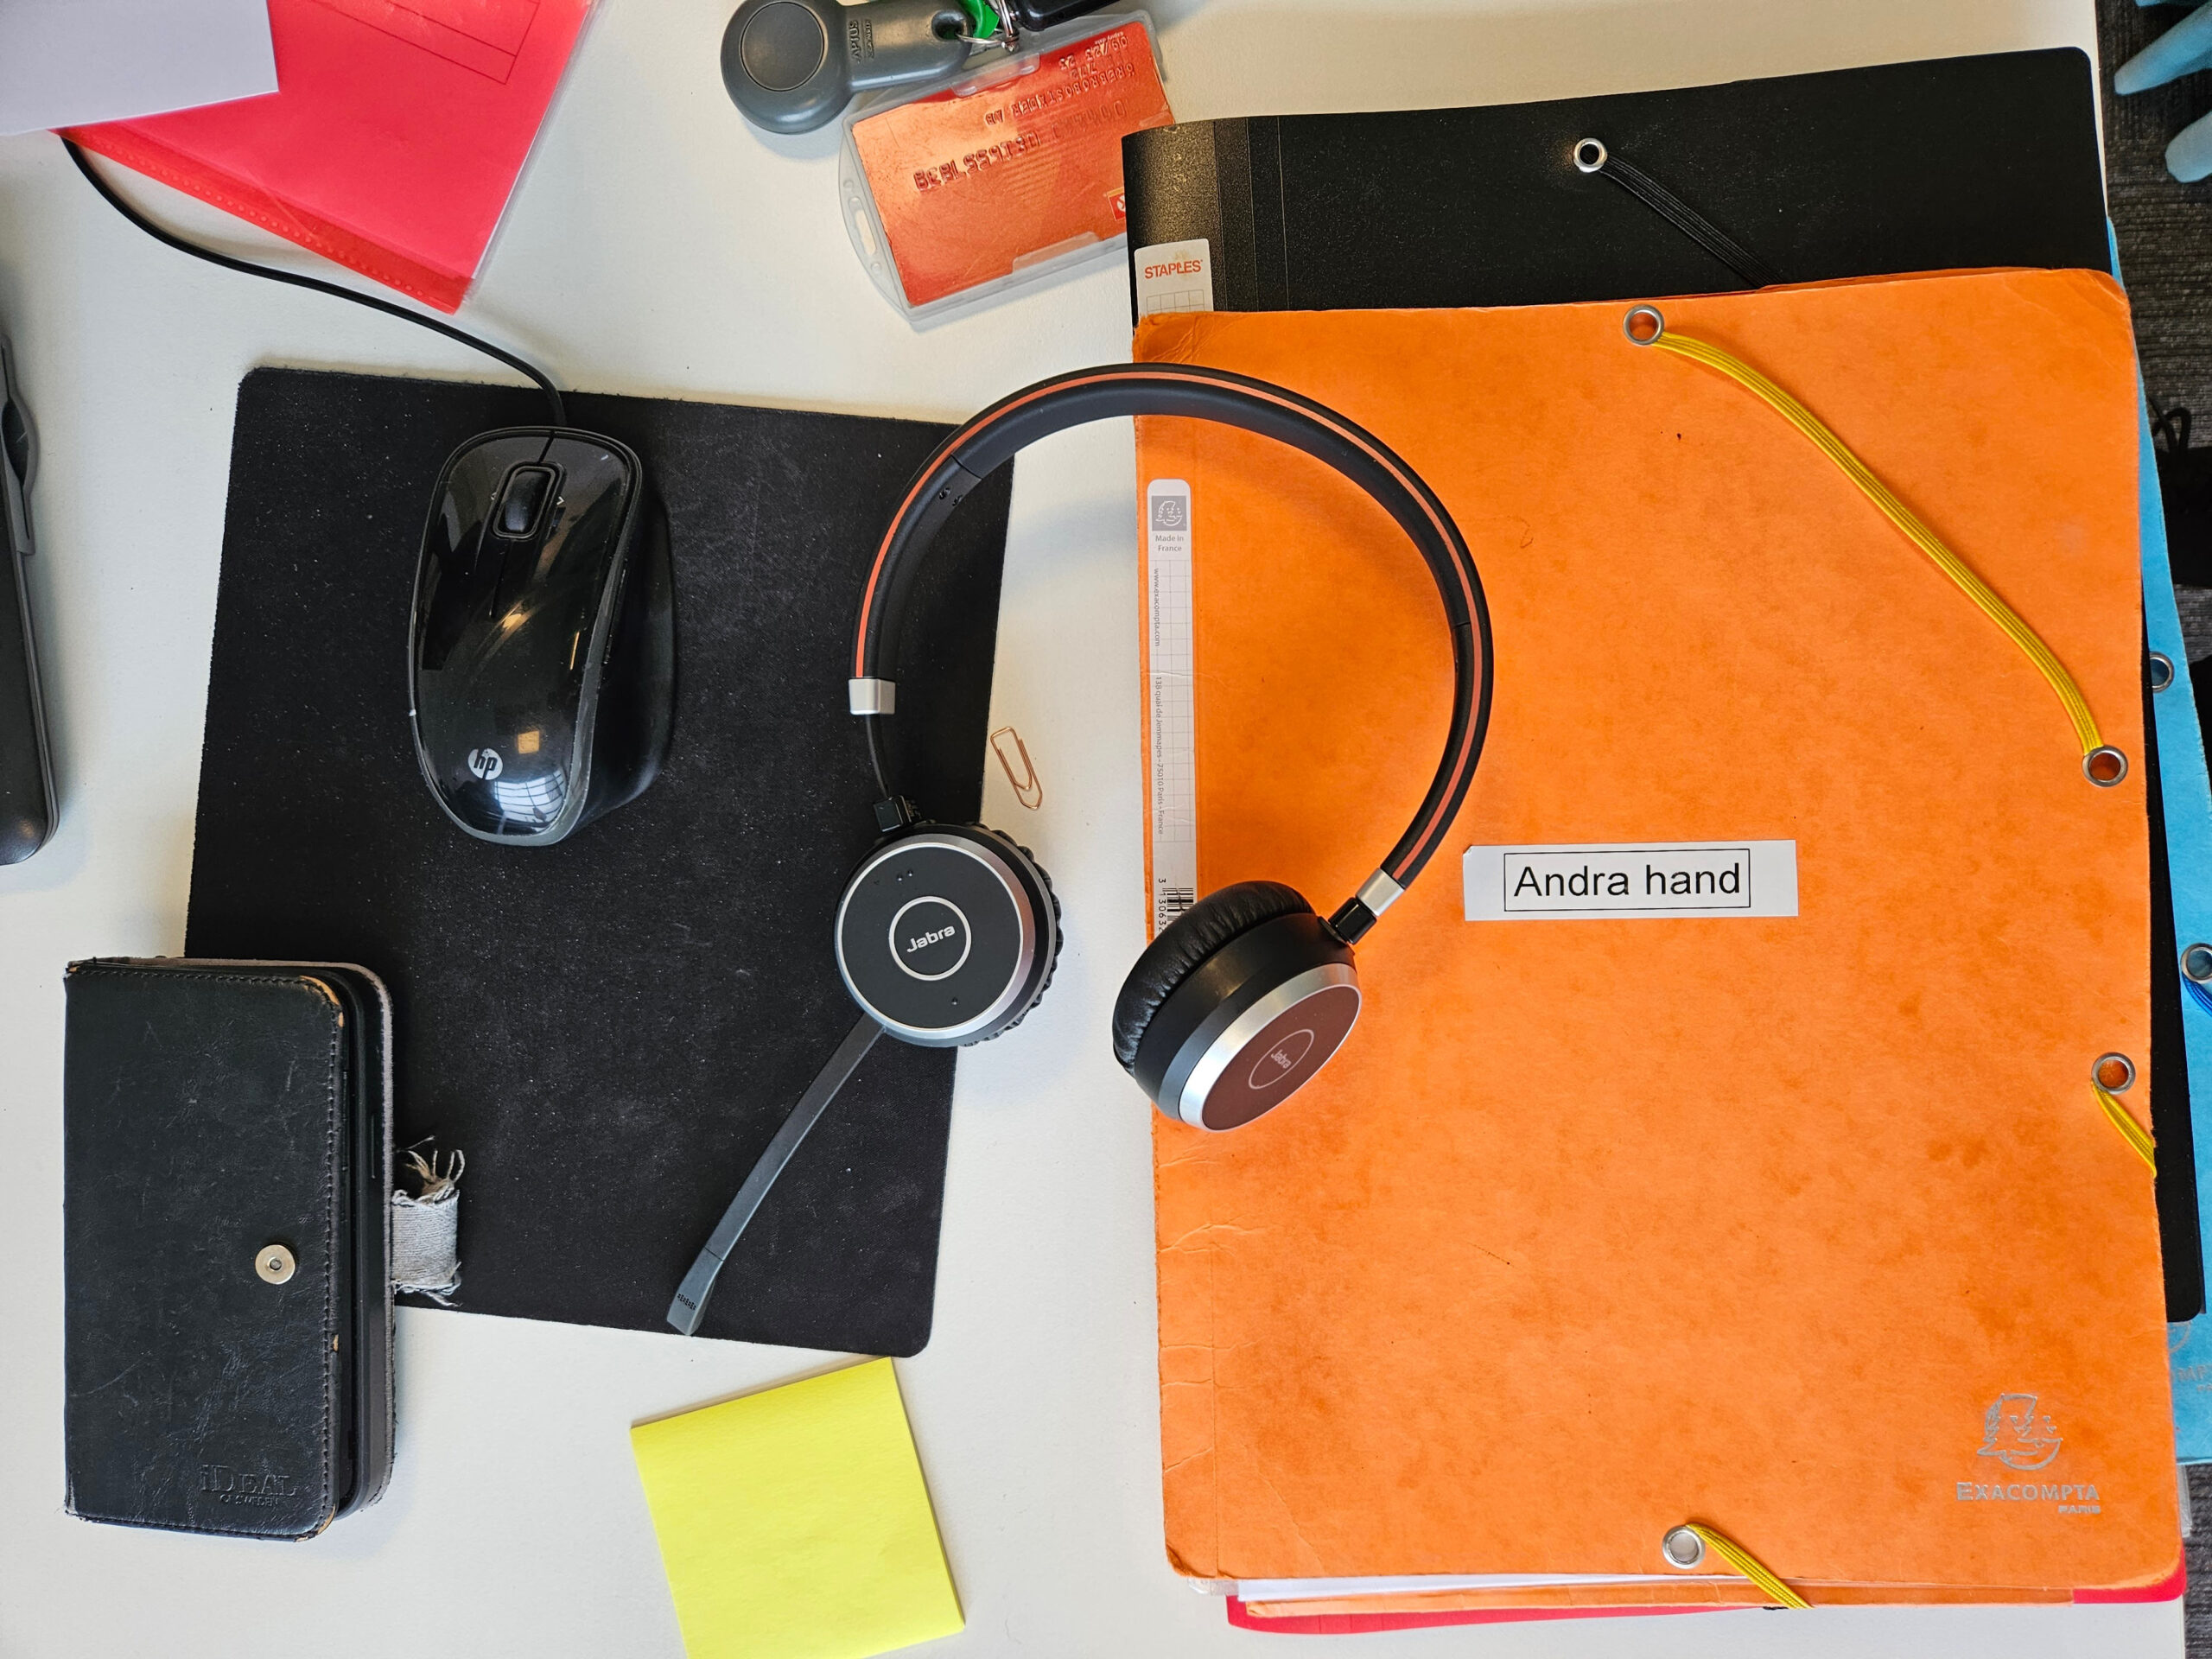 Detaljbild av saker på ett skrivbord: mappar, gem, post-it-lapp, mobil, hörlurar och inpaseringstagg.